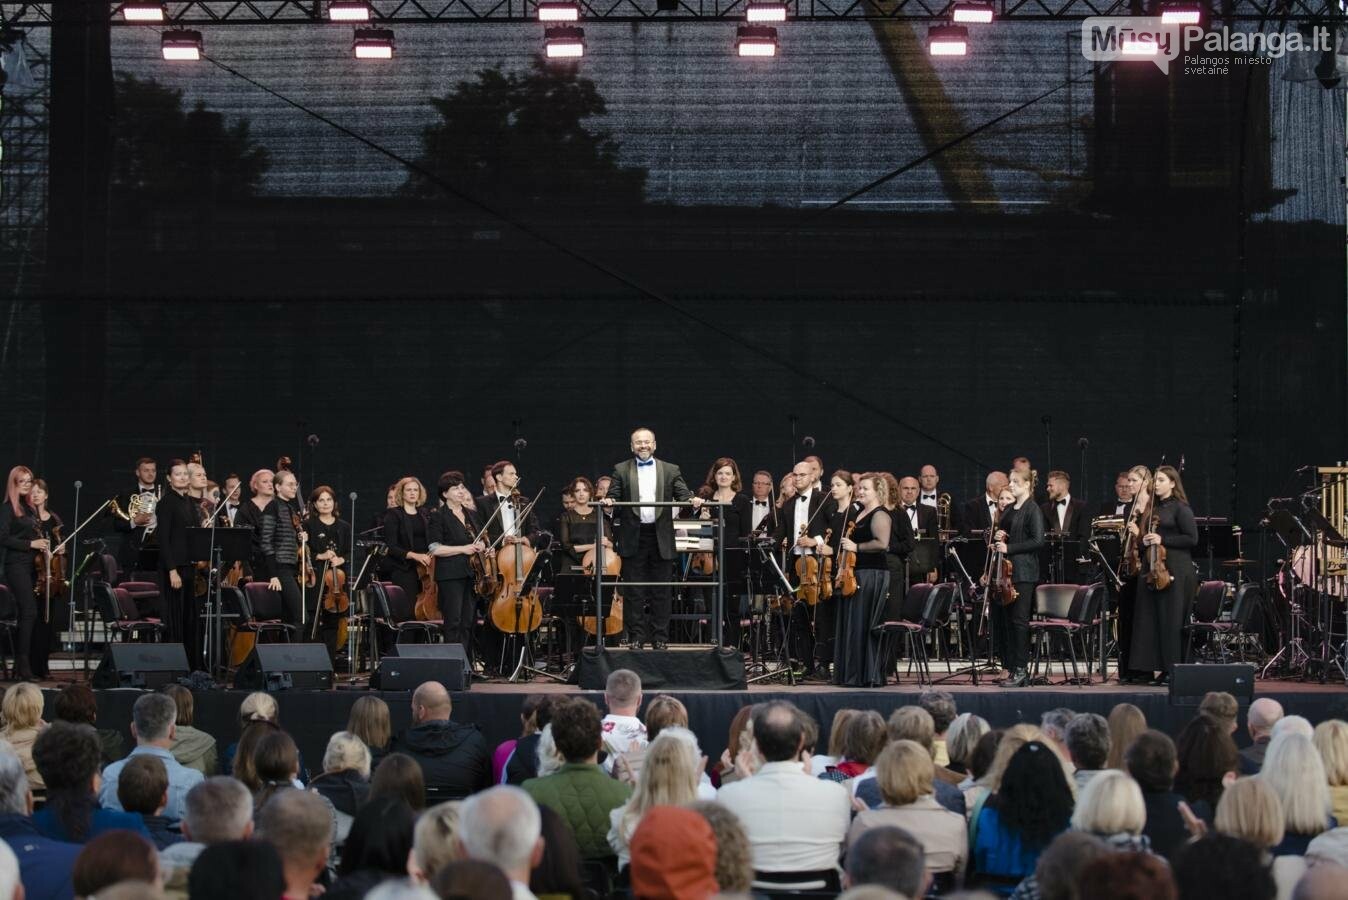 Klaipėdos festivalio pražios koncertas „Karo ir taikos dainos“ -  padėka ir padrąsinimas Ukrainos žmonėms, nuotrauka-25